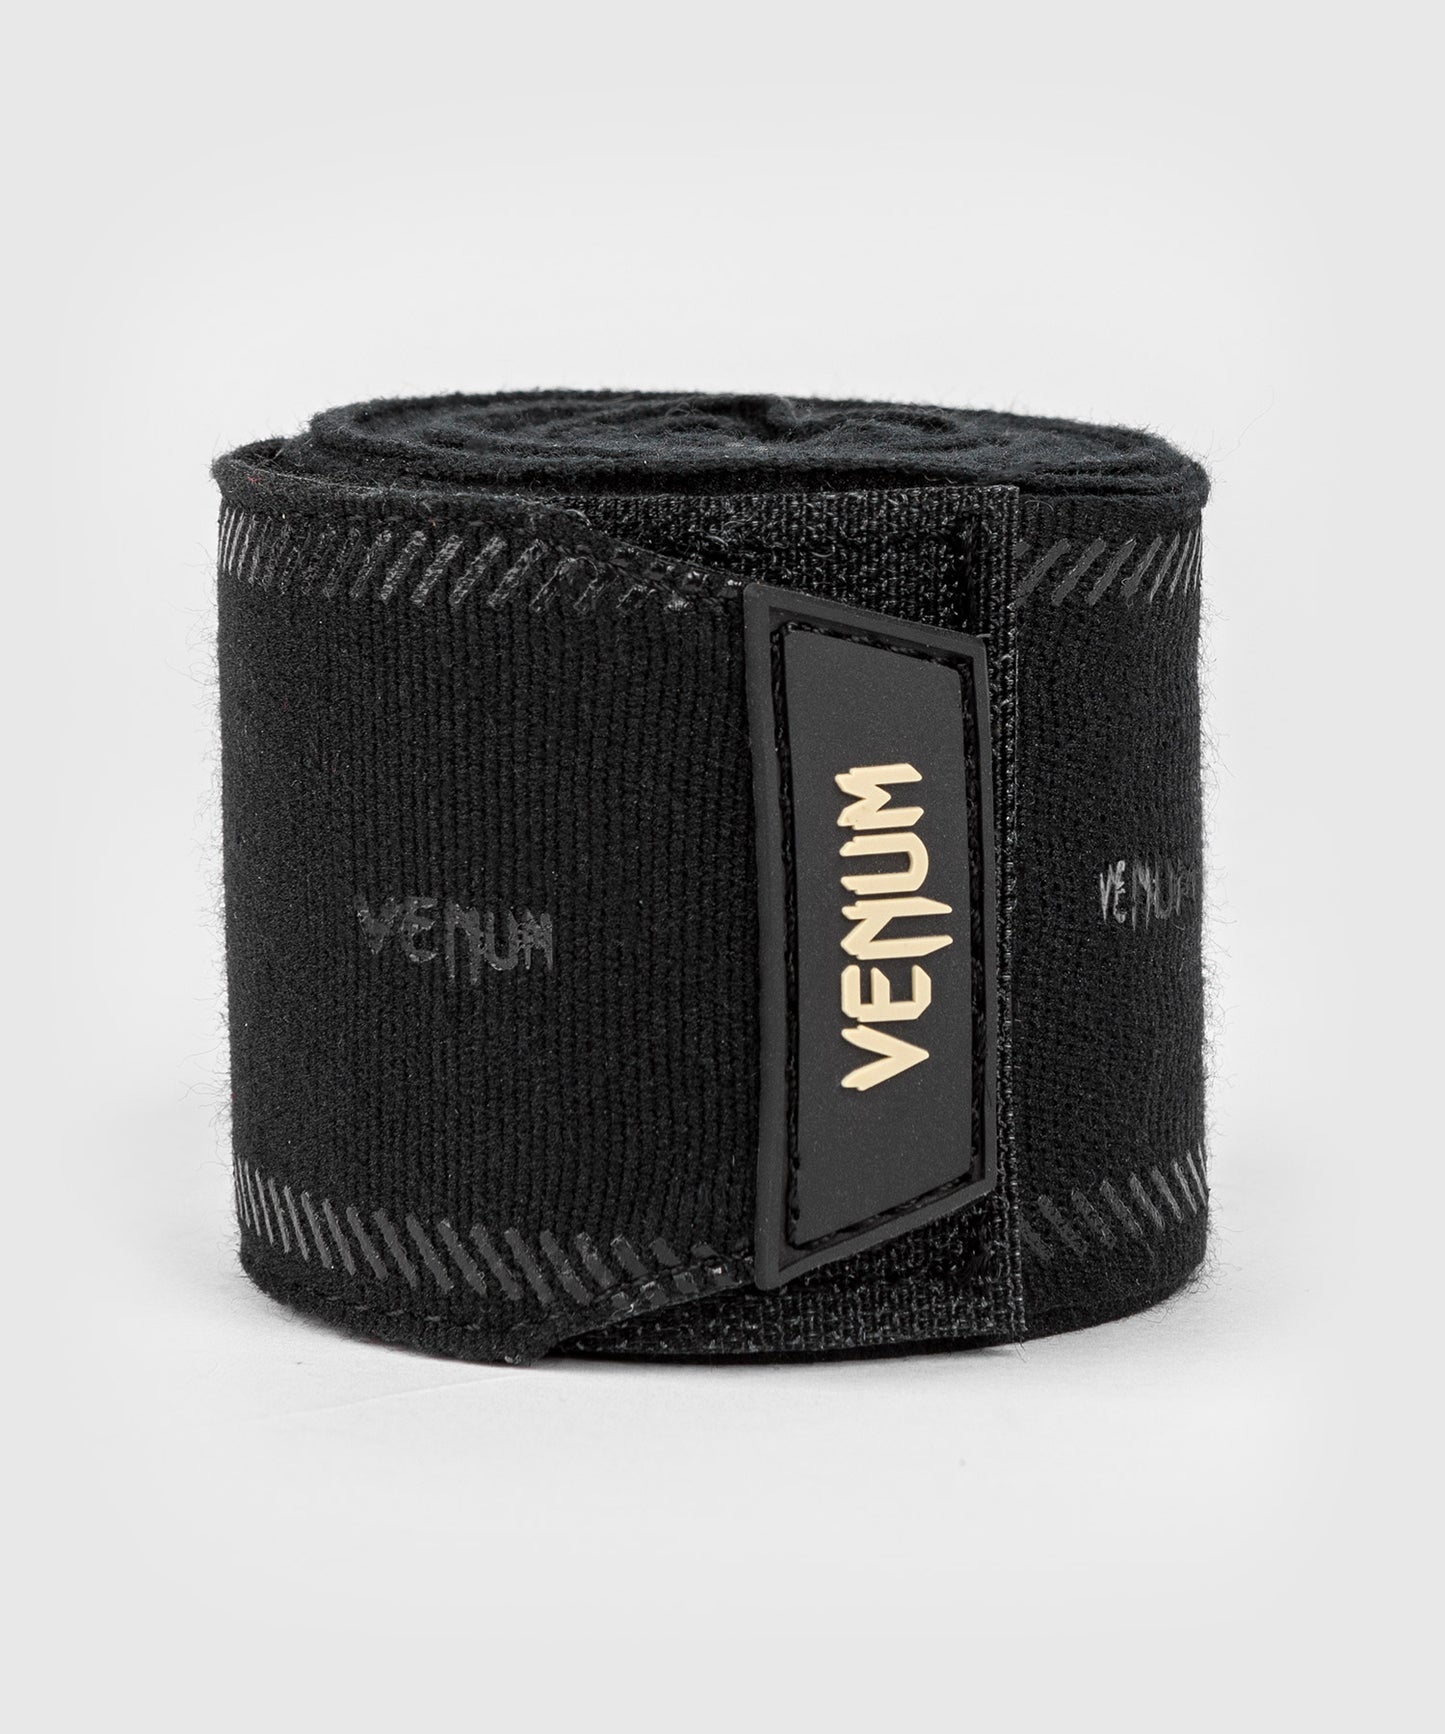 Venum Impact Evo Hand Wraps - Black - 98 in